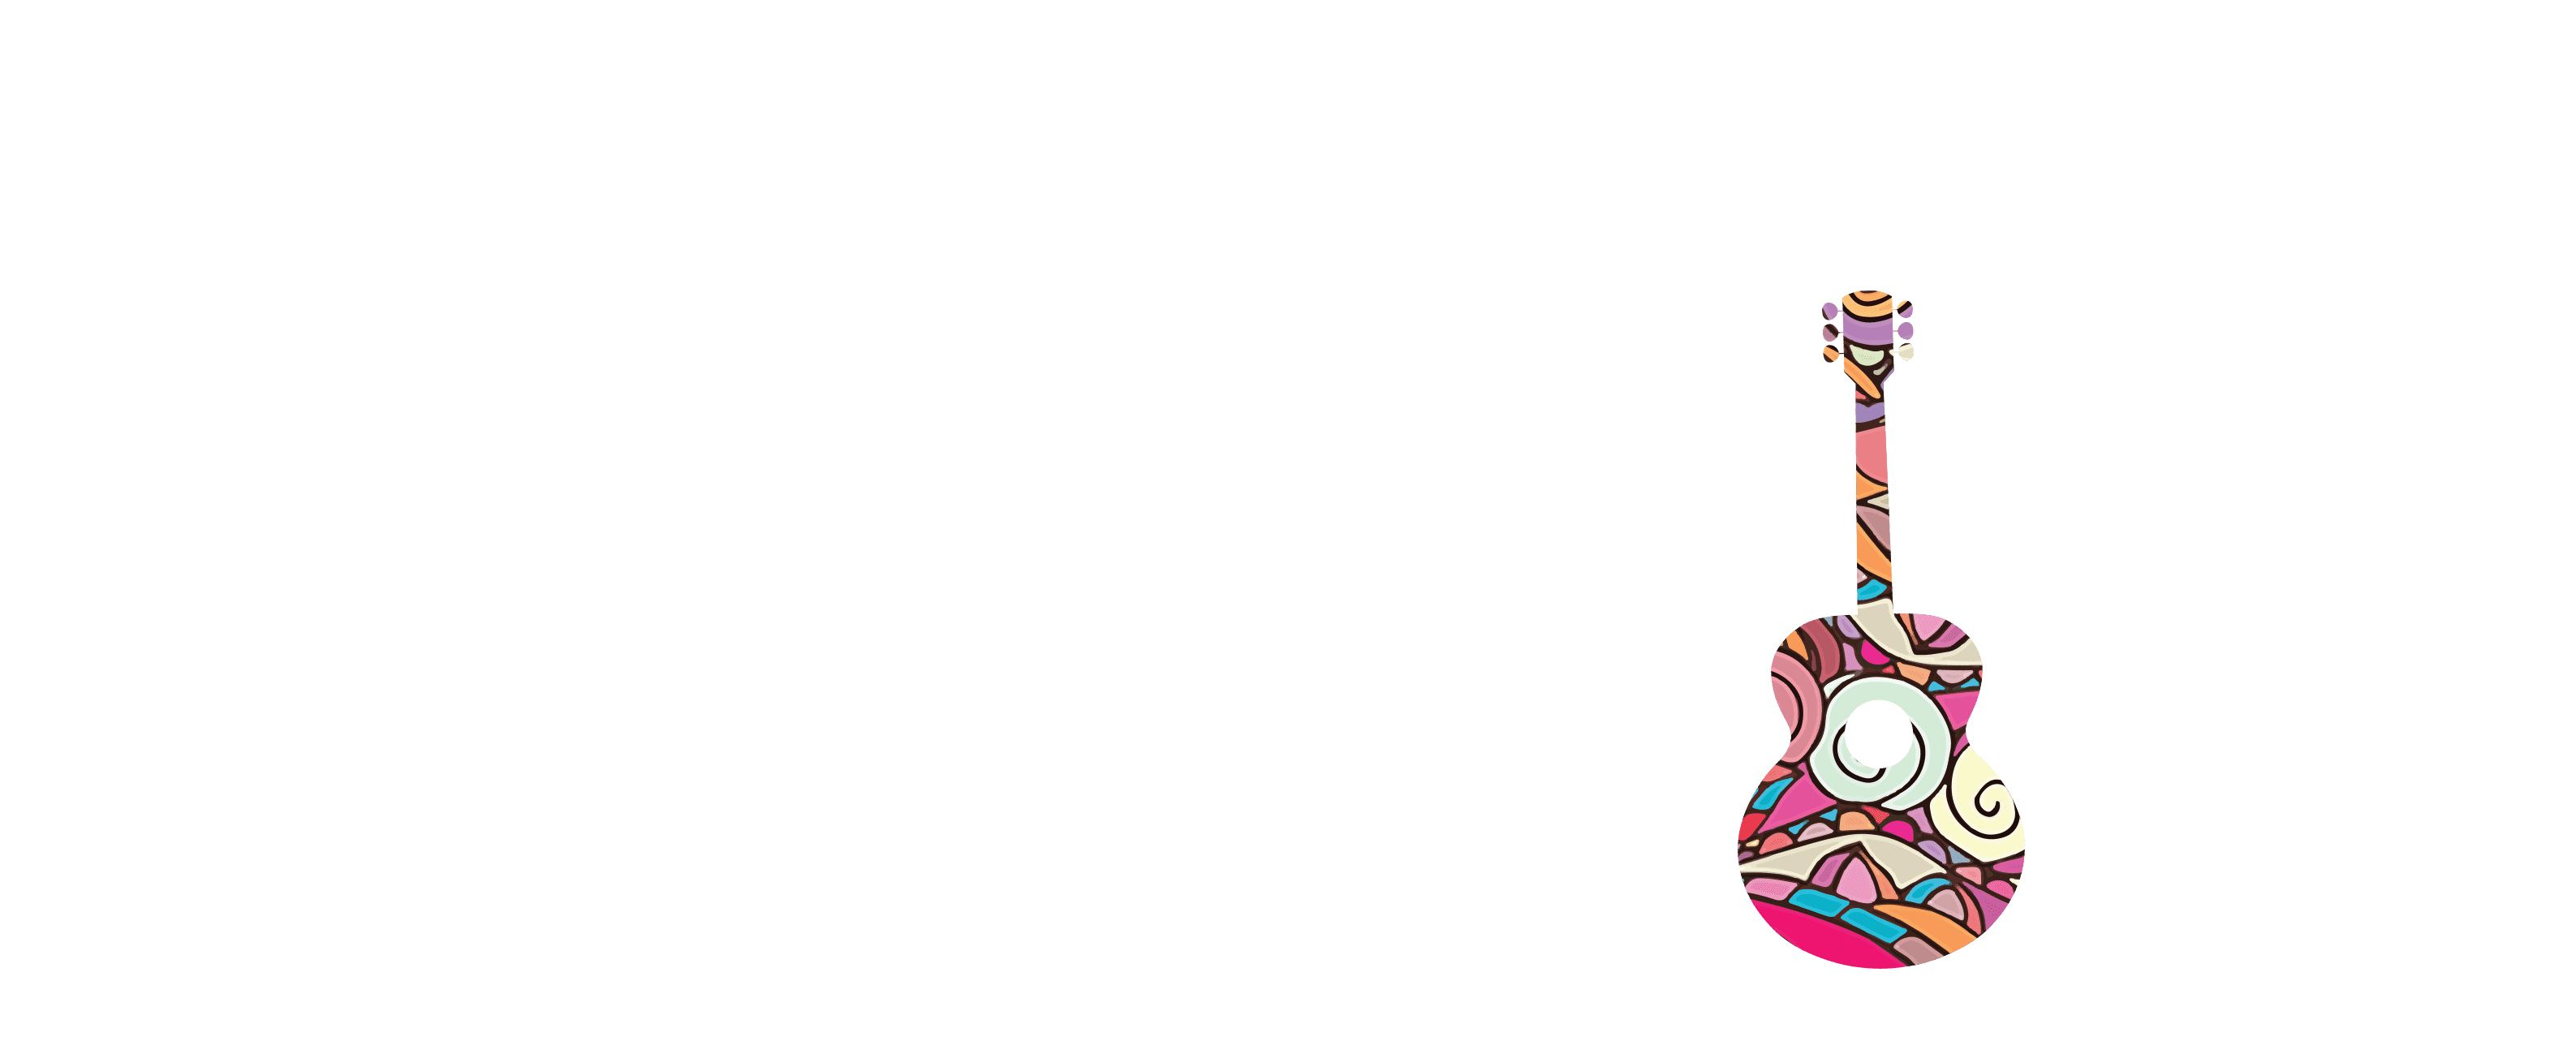 Laurel Canyon logo